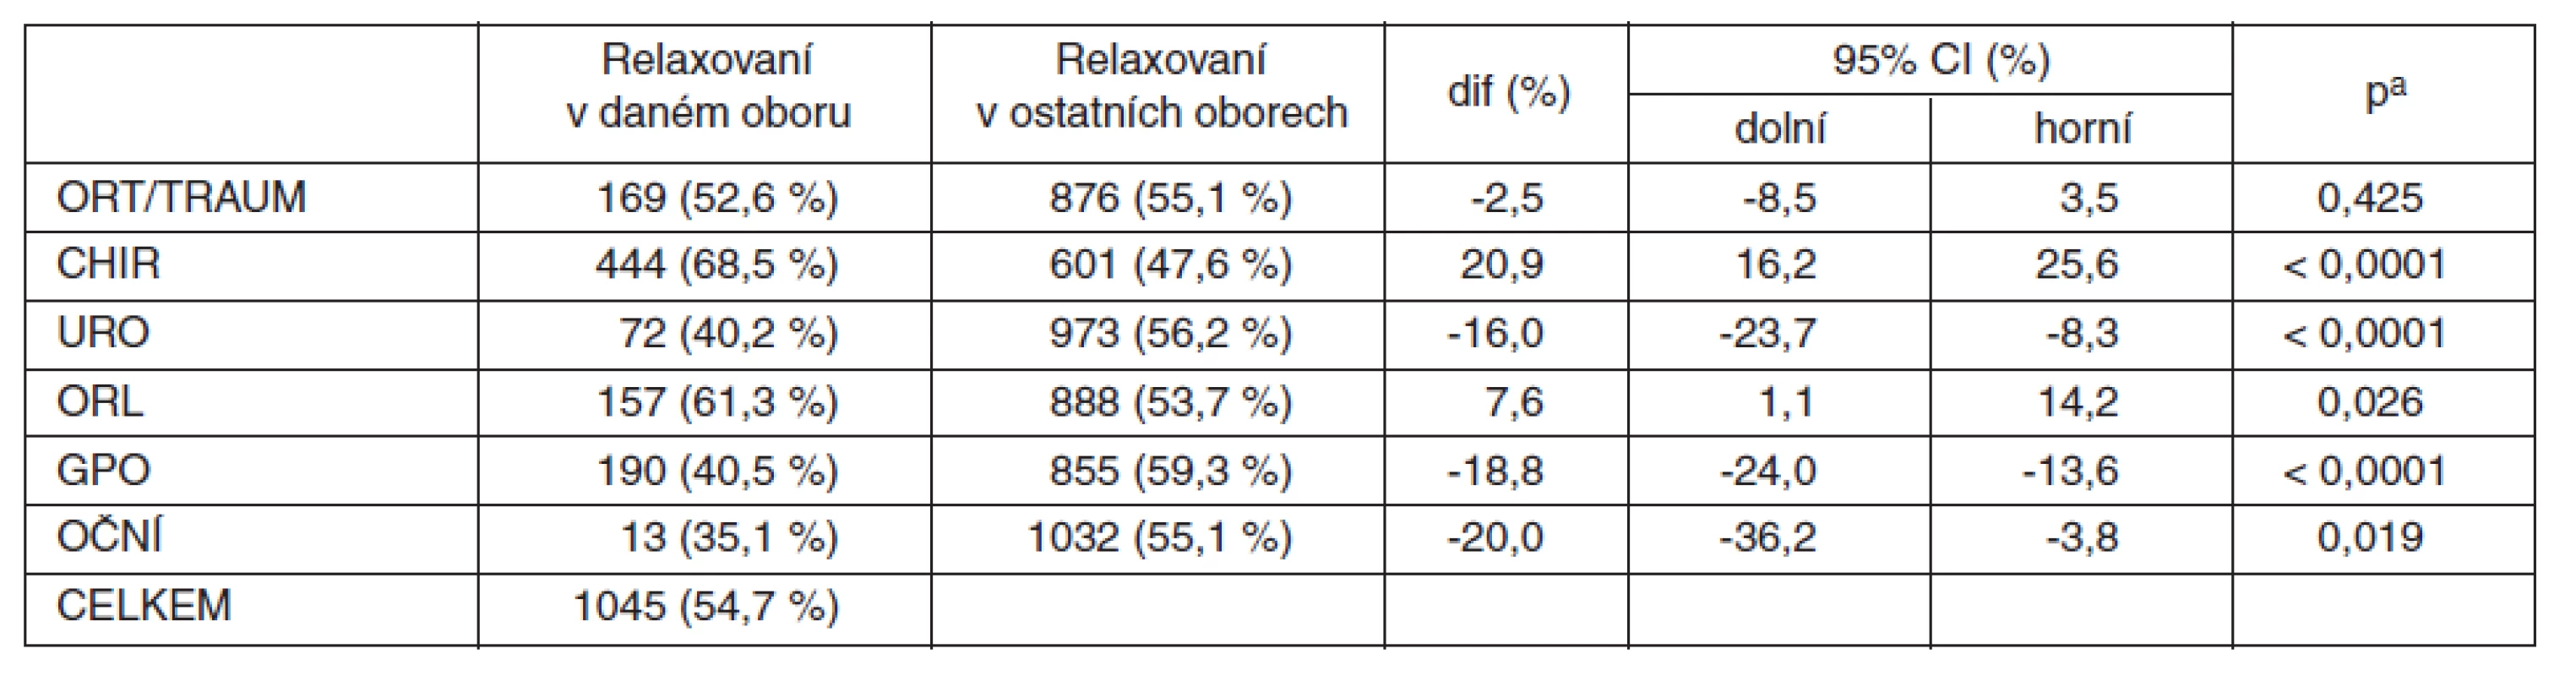 CAD2010 – srovnání podílu relaxovaných nemocných v CA podle jednotlivých oborů (procento relaxovaných v daném oboru z celkového počtu relaxovaných ve všech oborech)